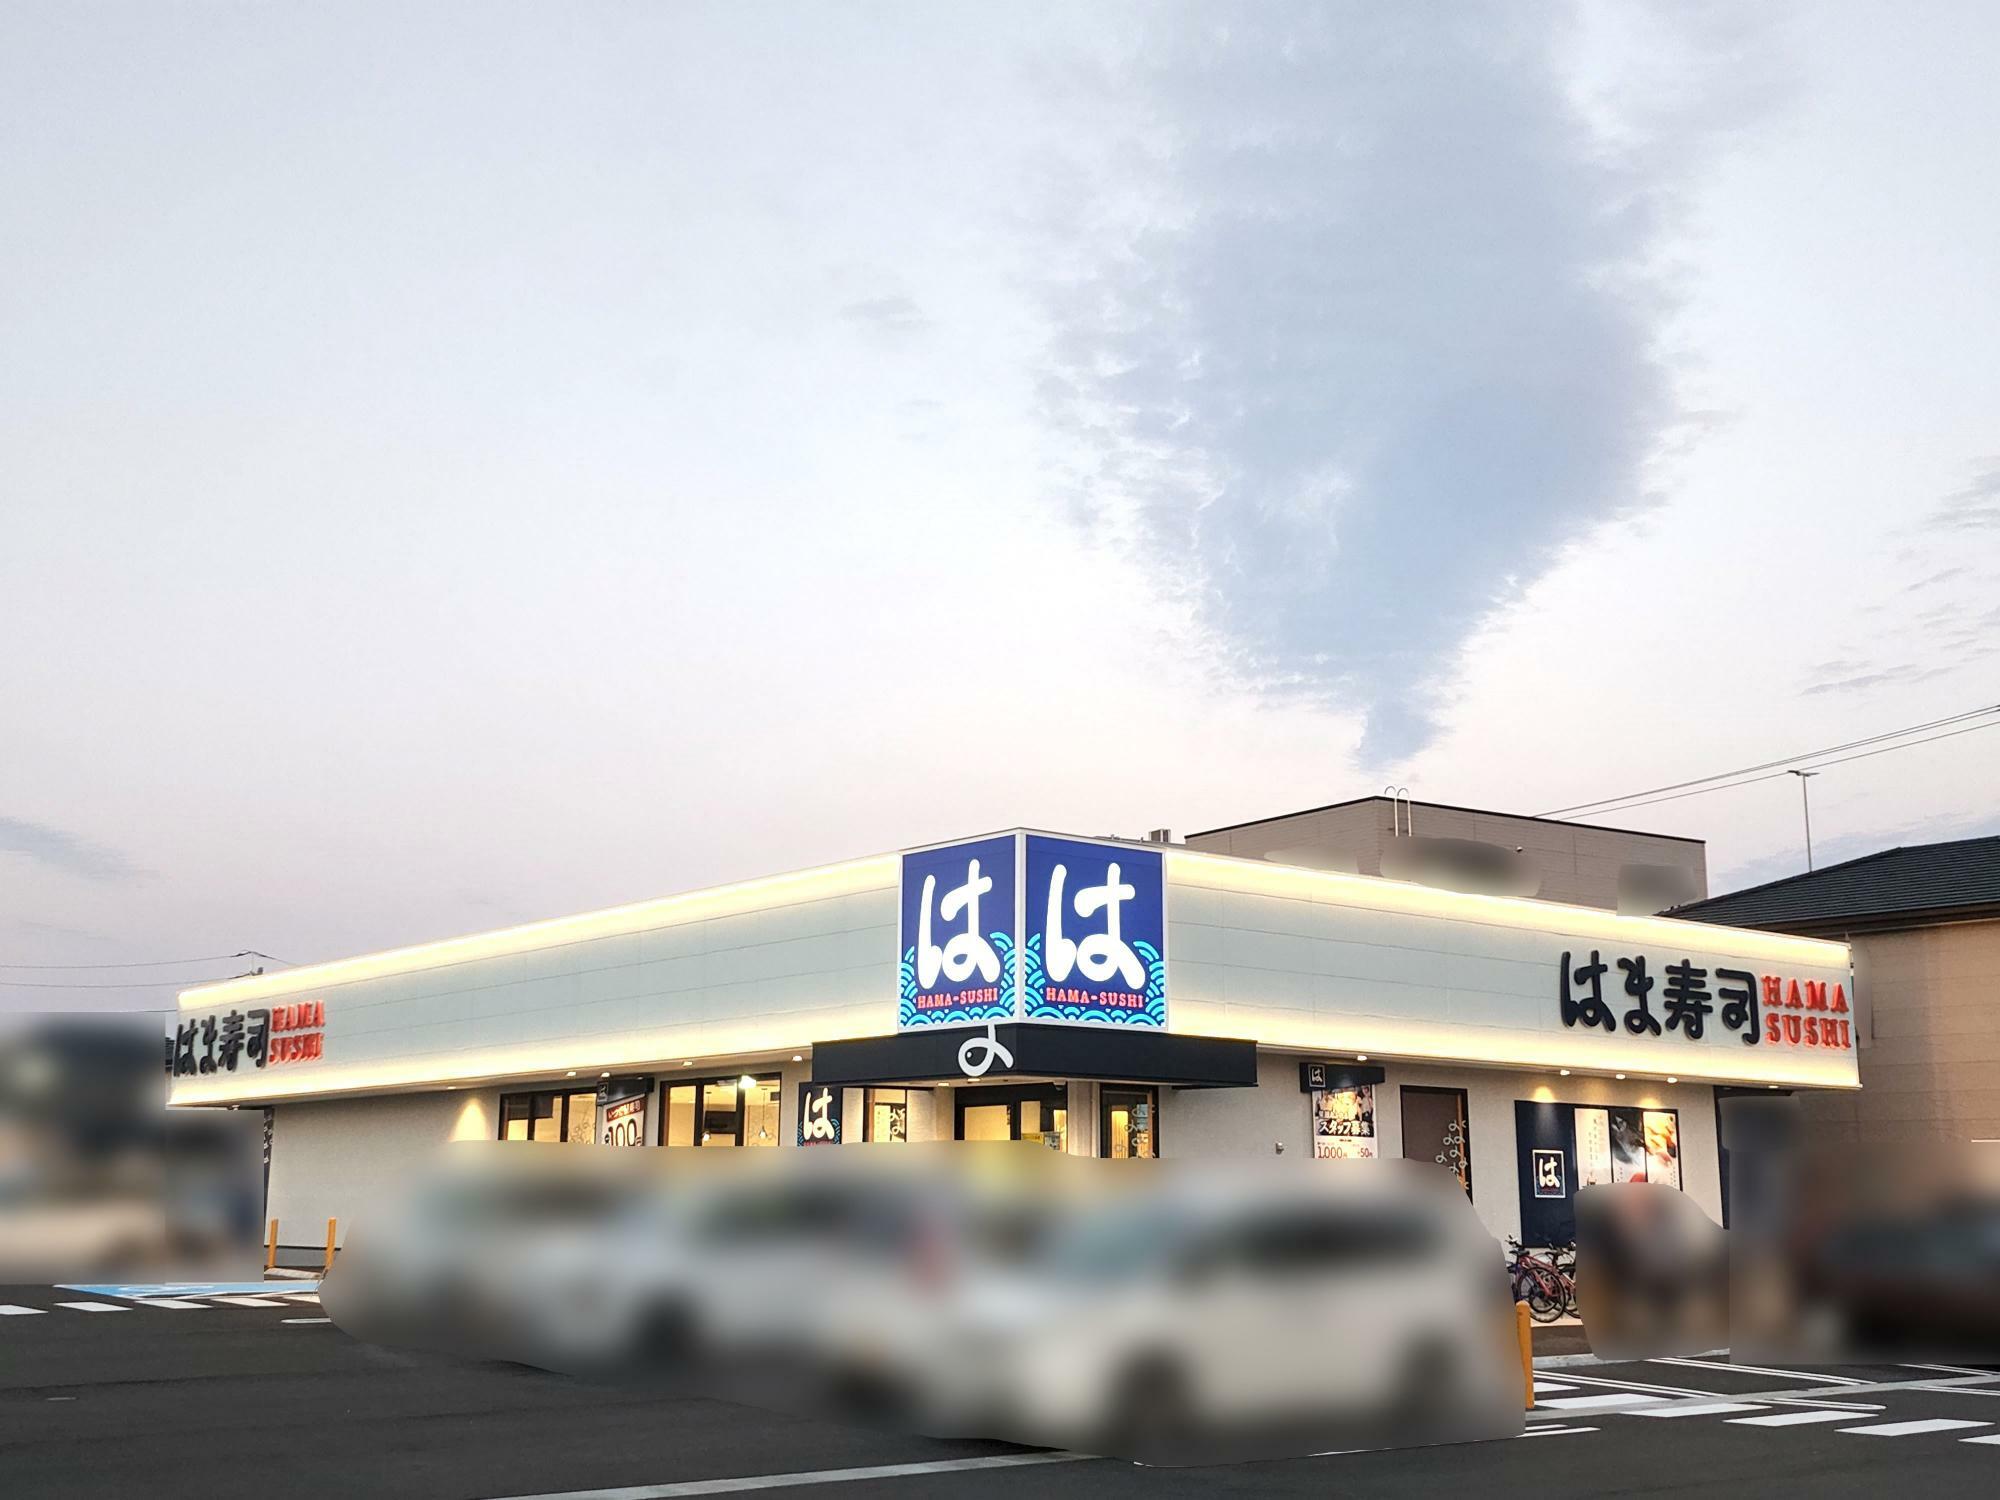 「はま寿司 徳島住吉店」上の写真だと少しわかりにくいが、グリーンクリーム色の屋根。